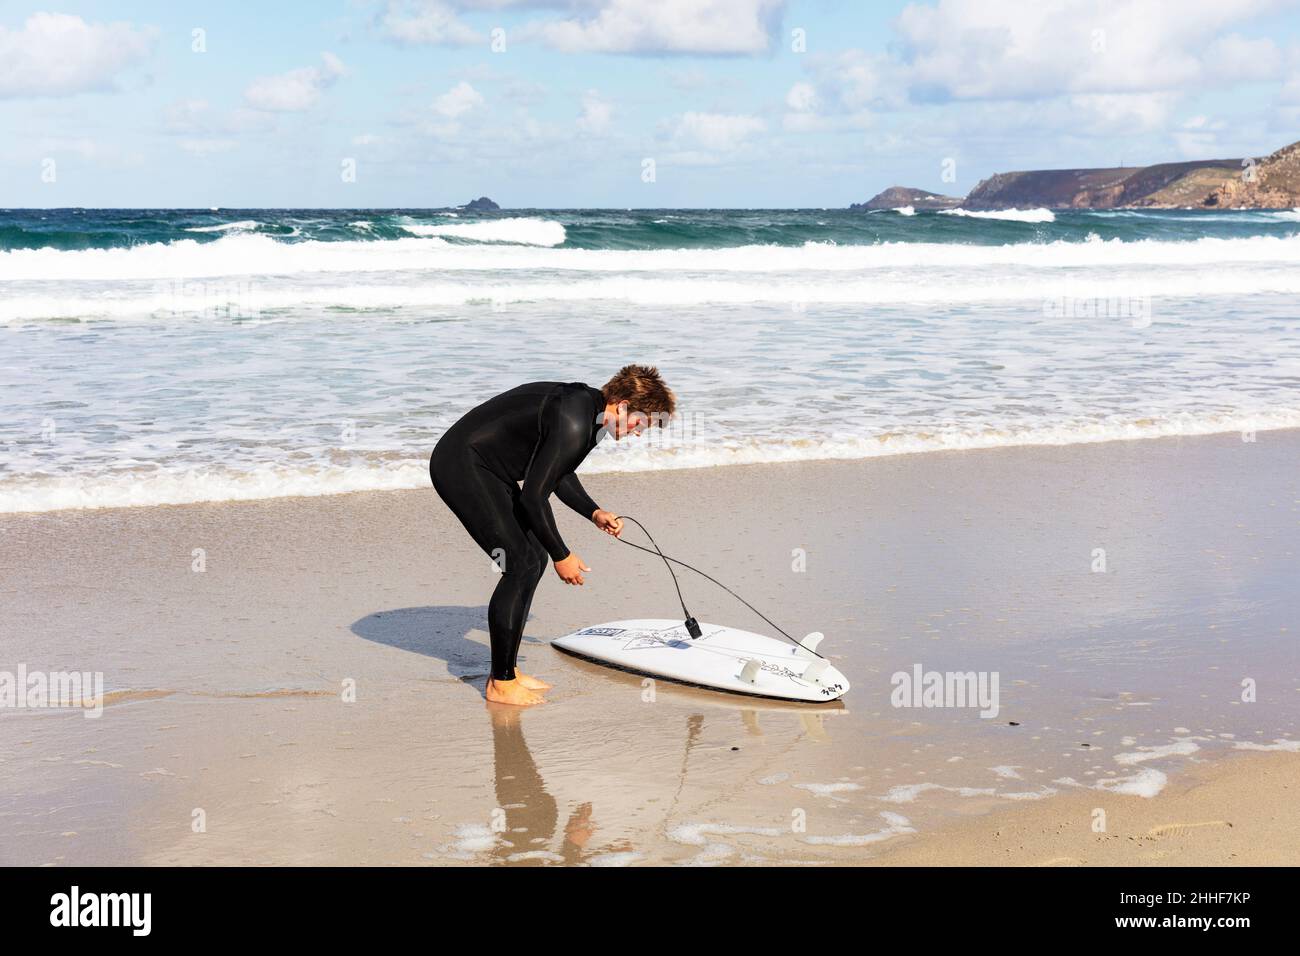 Surfer, Surfer und Surfbrett, Surfbrett, Hayle Beach, Cornwall, Großbritannien, England, Cornwall Surfer, Cornwall Surfboarding, Surfboarder, Surfboarder, Meer Stockfoto